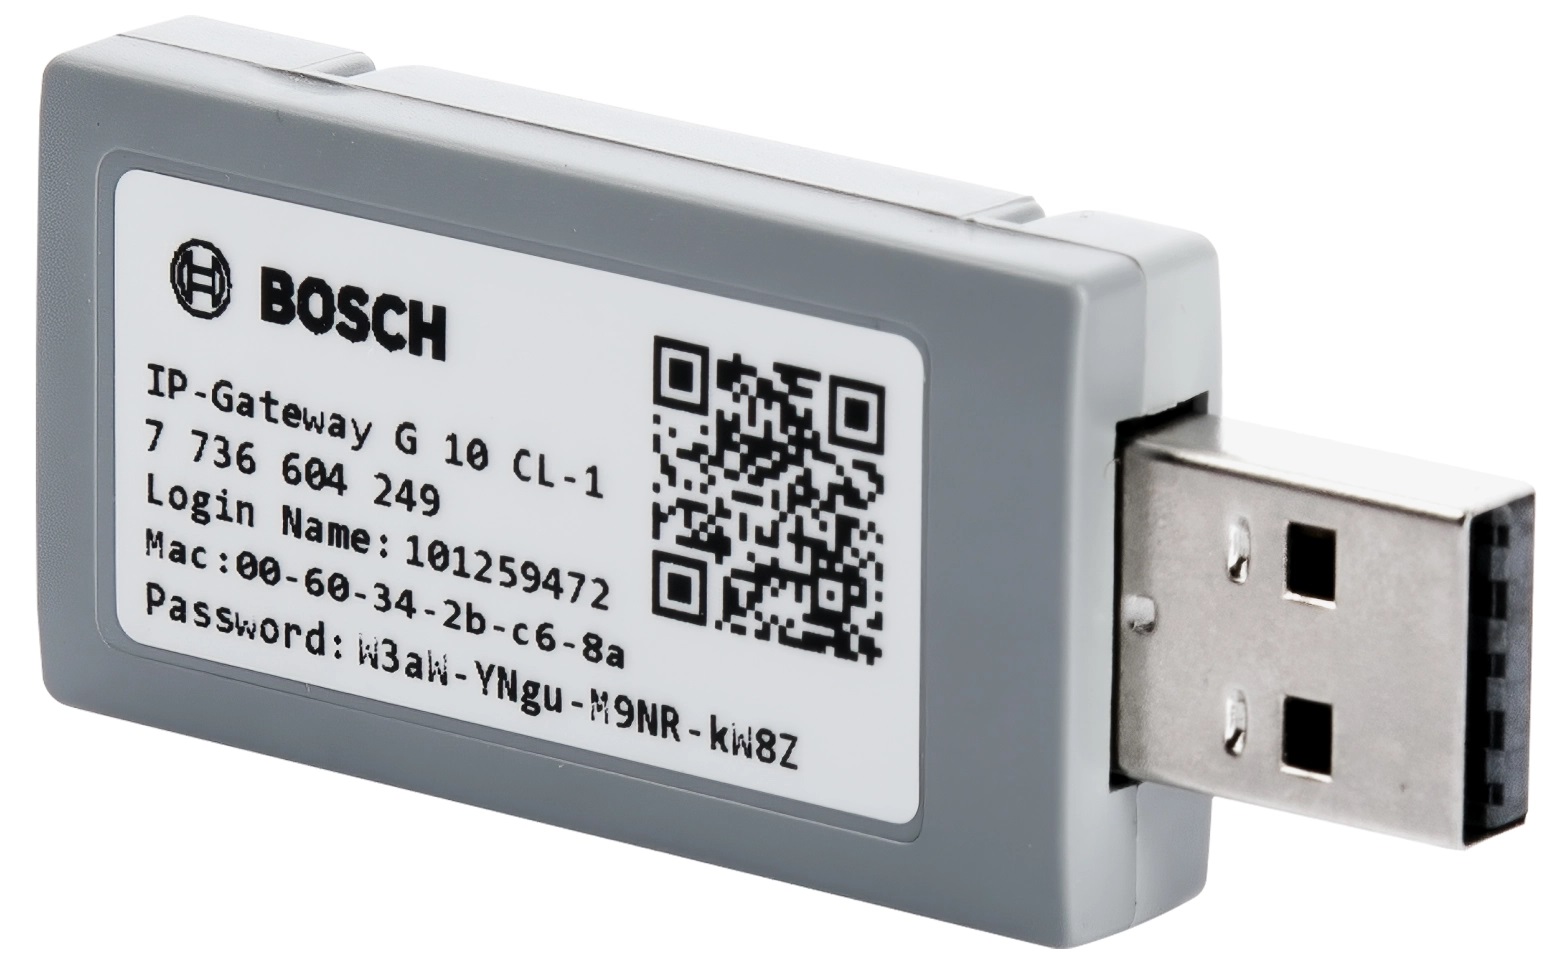 Wi-Fi модуль для кондиционера BOSCH MiAc-03 G10CL1 (7736604249) в Киеве